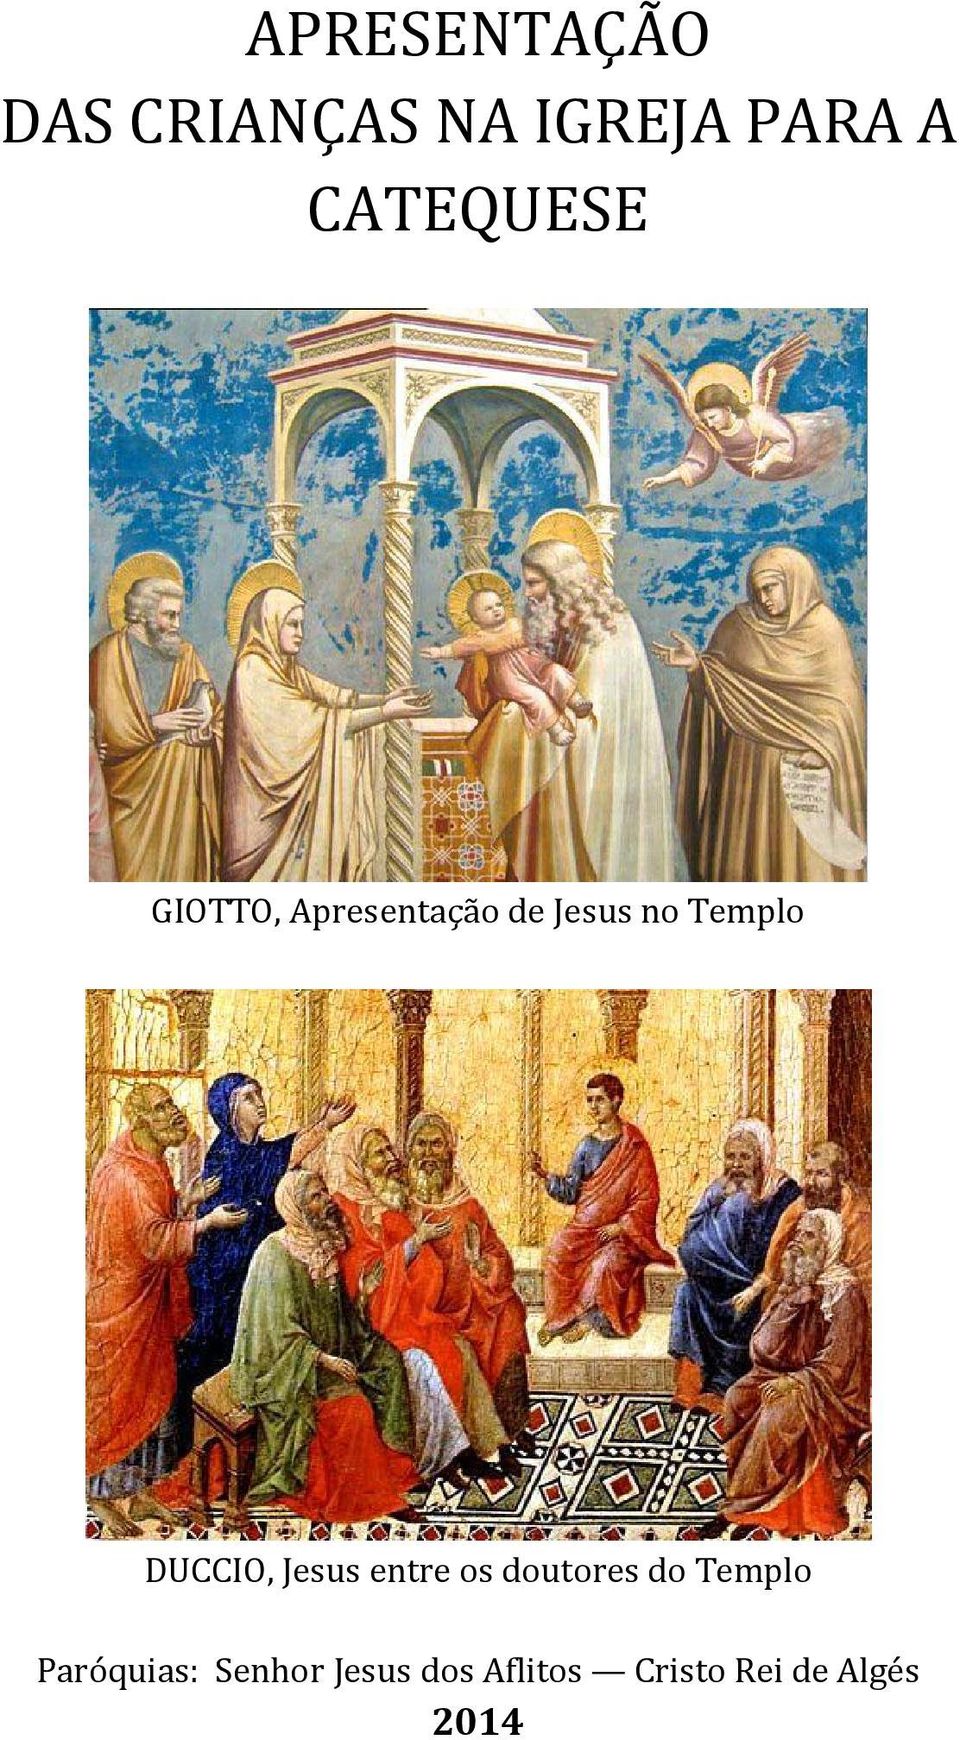 DUCCIO, Jesus entre os doutores do Templo